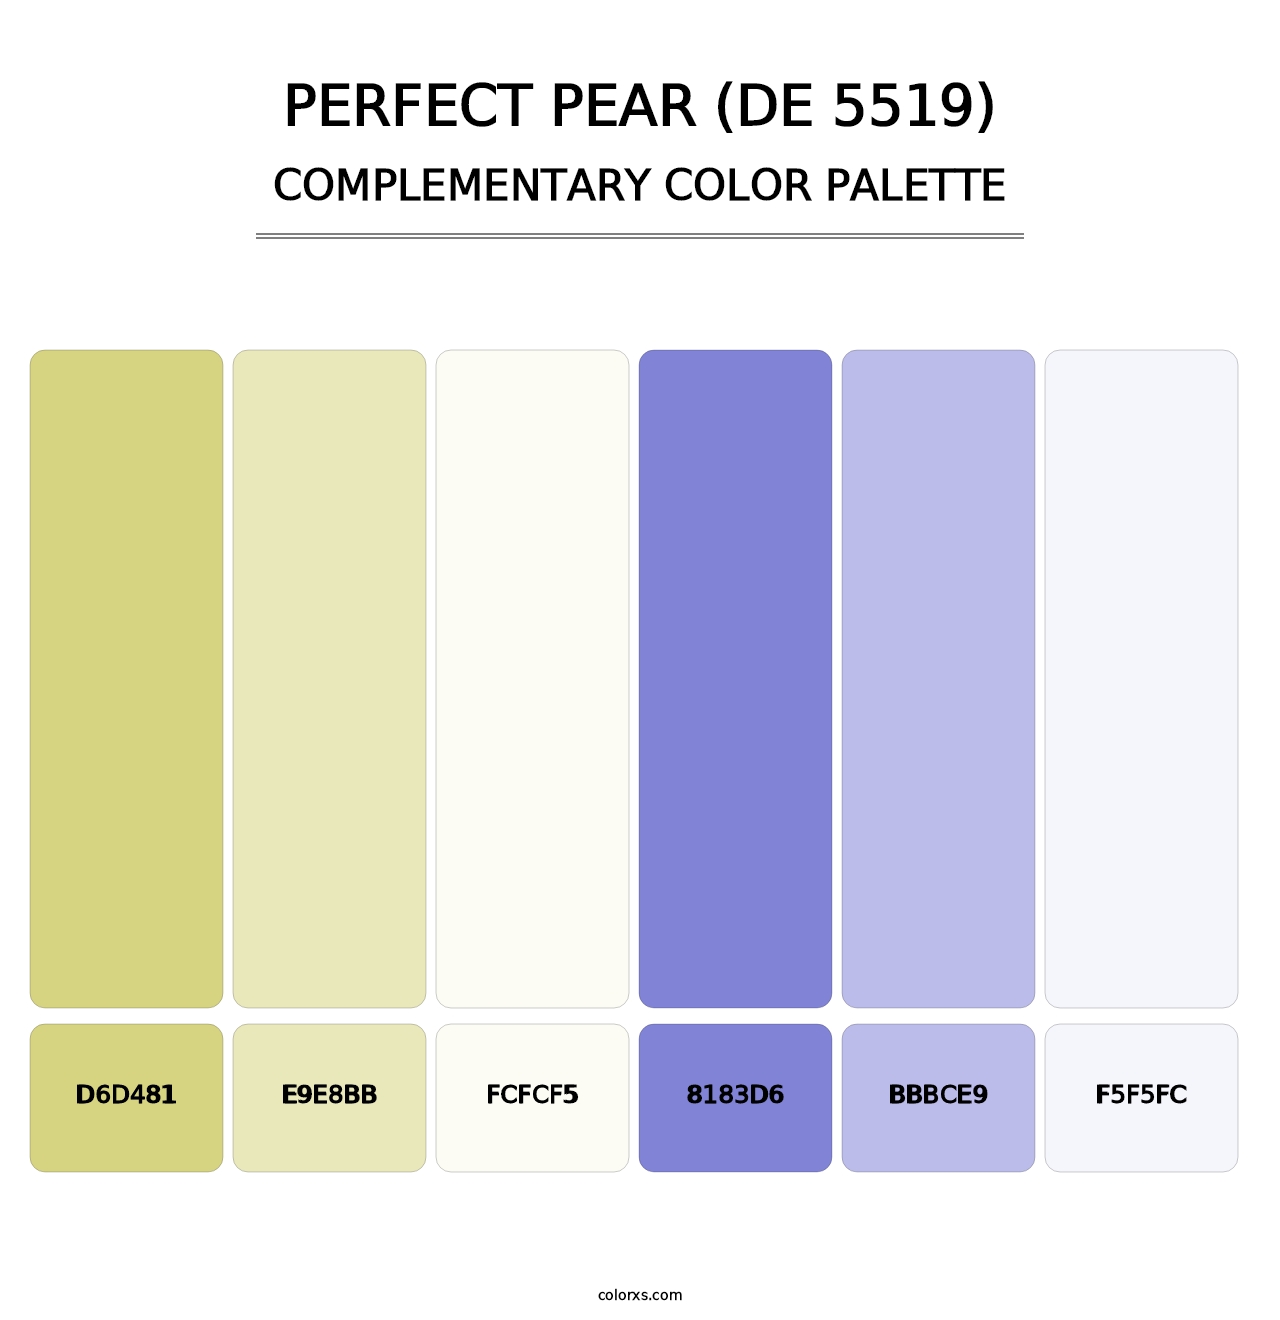 Perfect Pear (DE 5519) - Complementary Color Palette